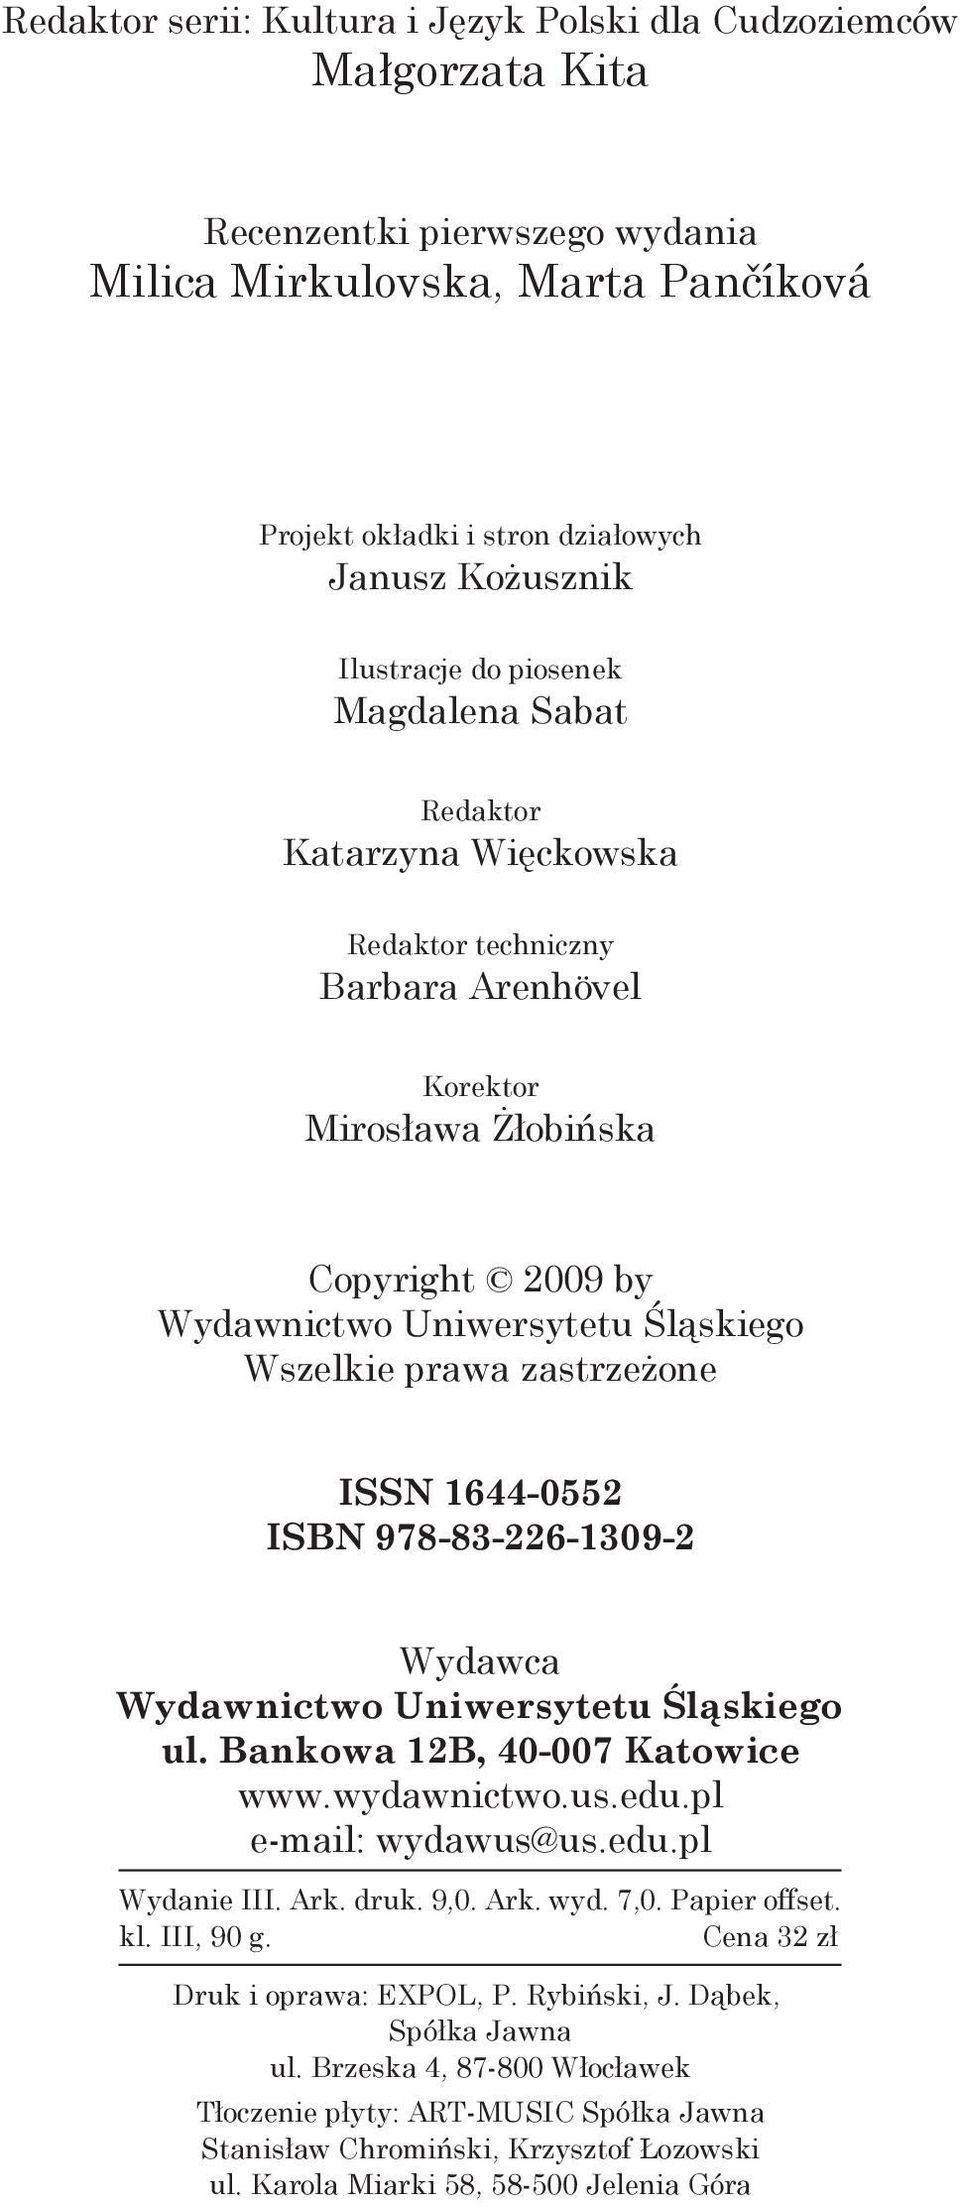 prawa zastrzeżone ISSN 1644-0552 ISBN 978-83-226-1309-2 Wydawca Wydawnictwo Uniwersytetu Śląskiego ul. Bankowa 12B, 40-007 Katowice www.wydawnictwo.us.edu.pl e-mail: wydawus@us.edu.pl Wydanie III.